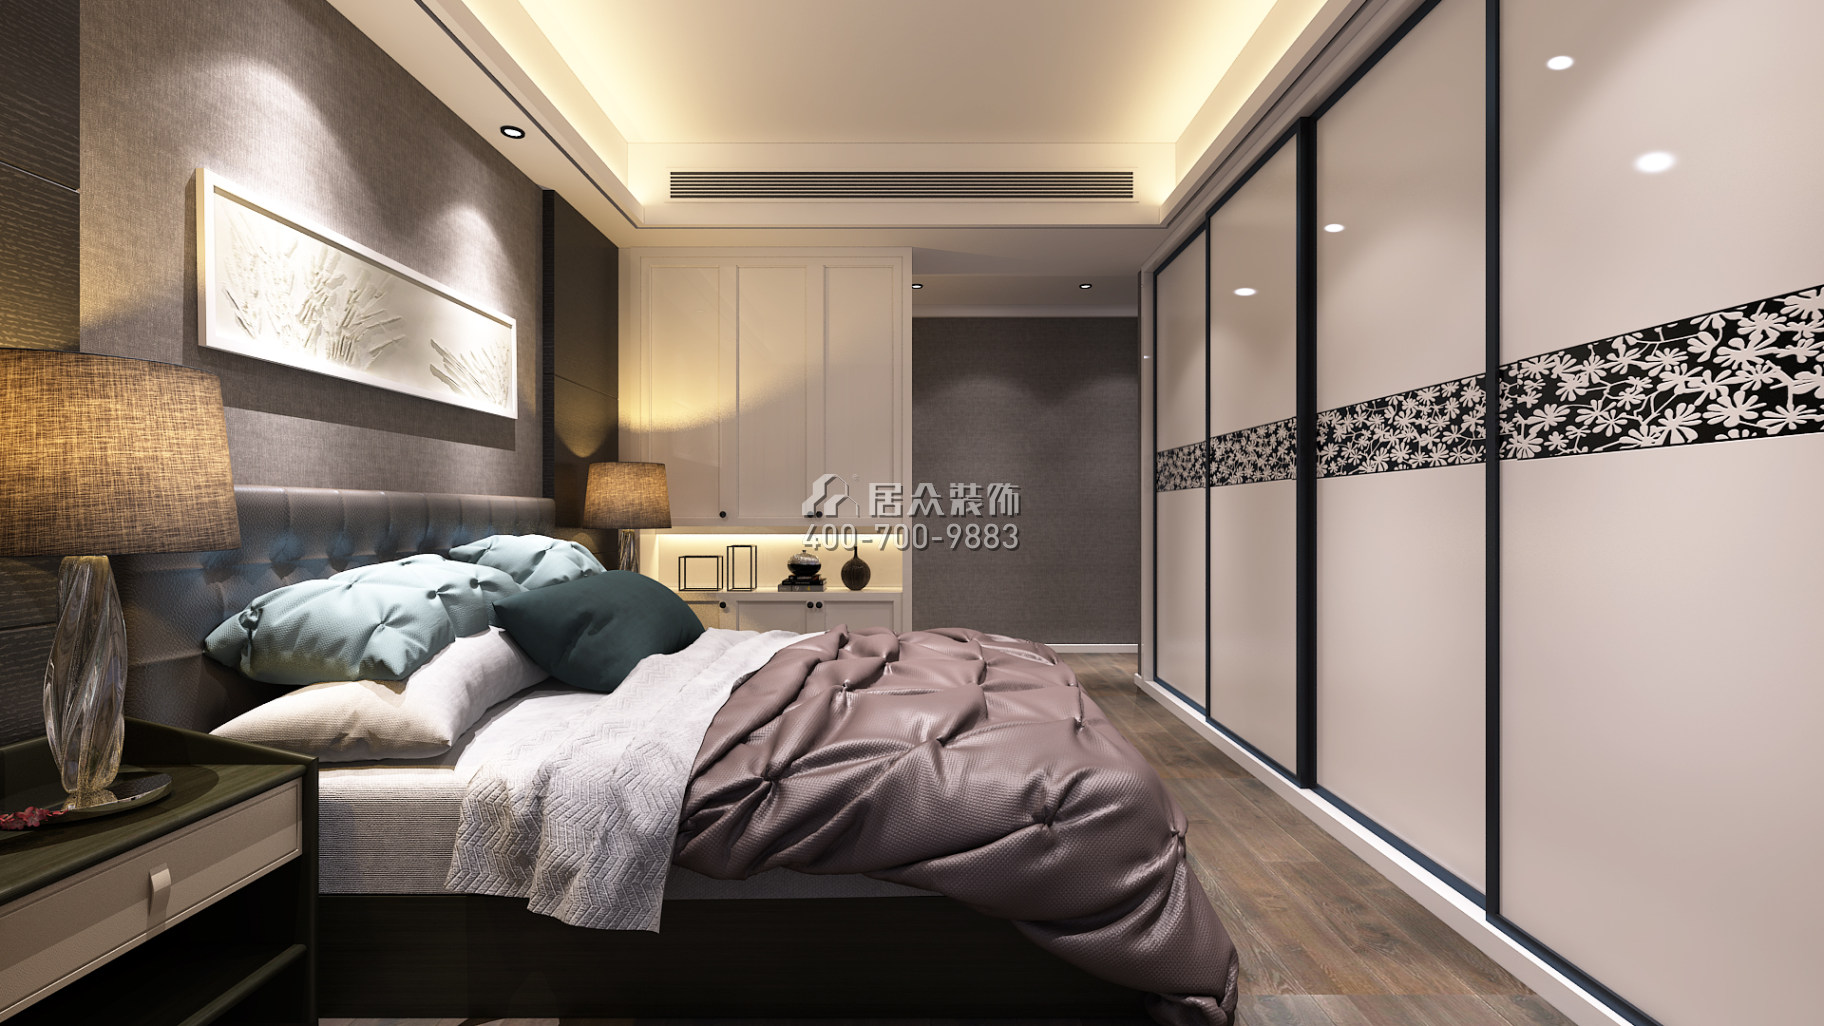 天源星城145平方米现代简约风格平层户型卧室装修效果图